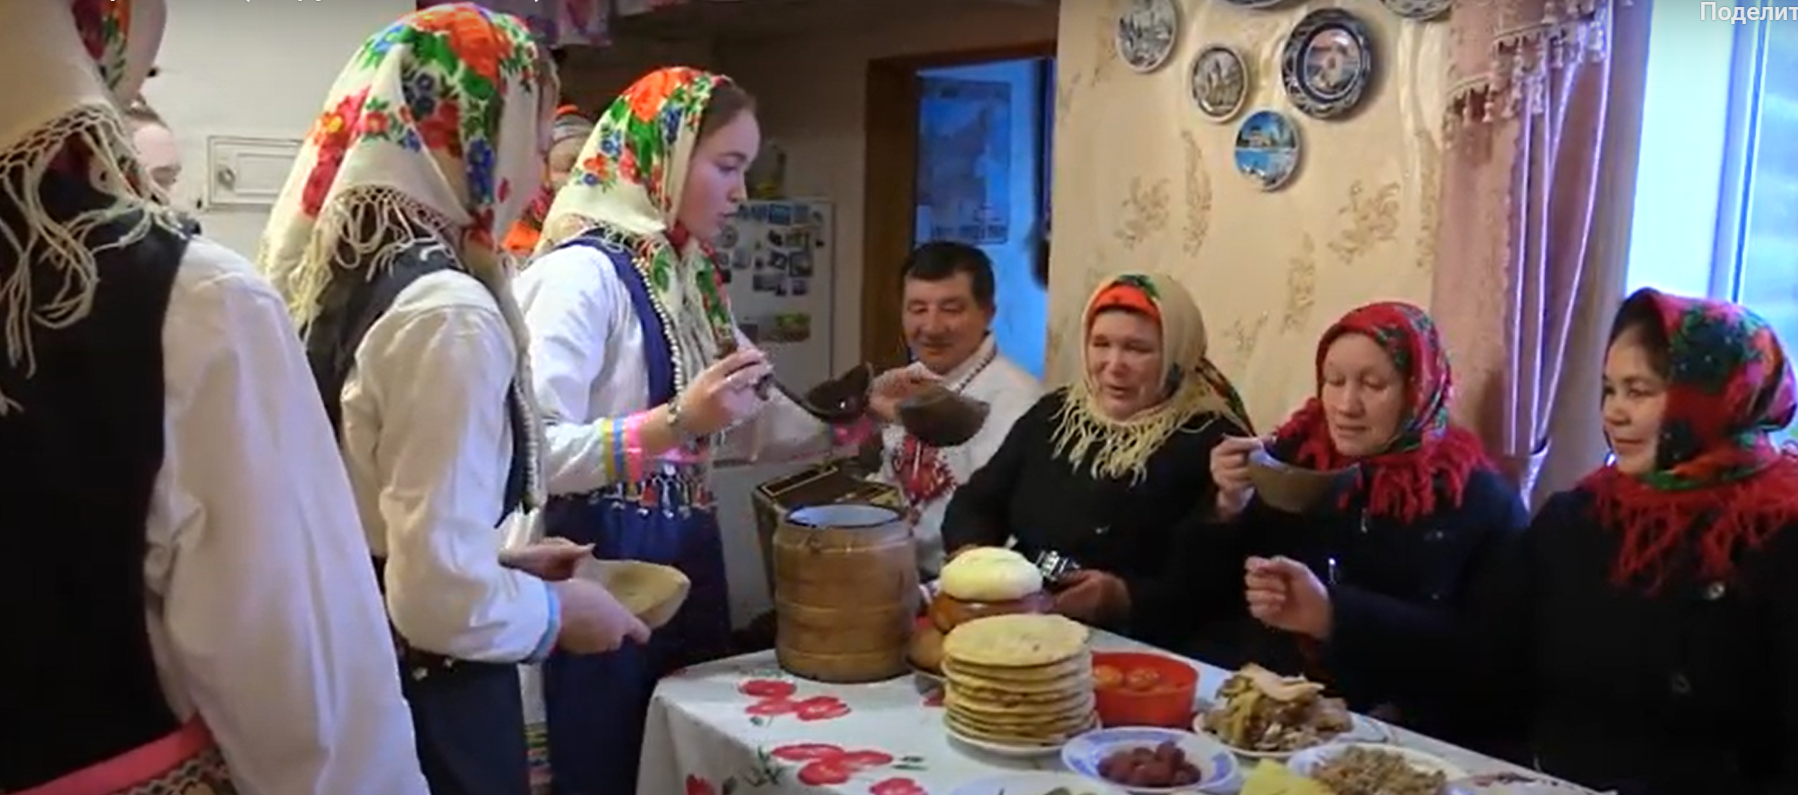 Марийский обрядовый праздник “Шорыкйол” пройдет в селе Кукнур